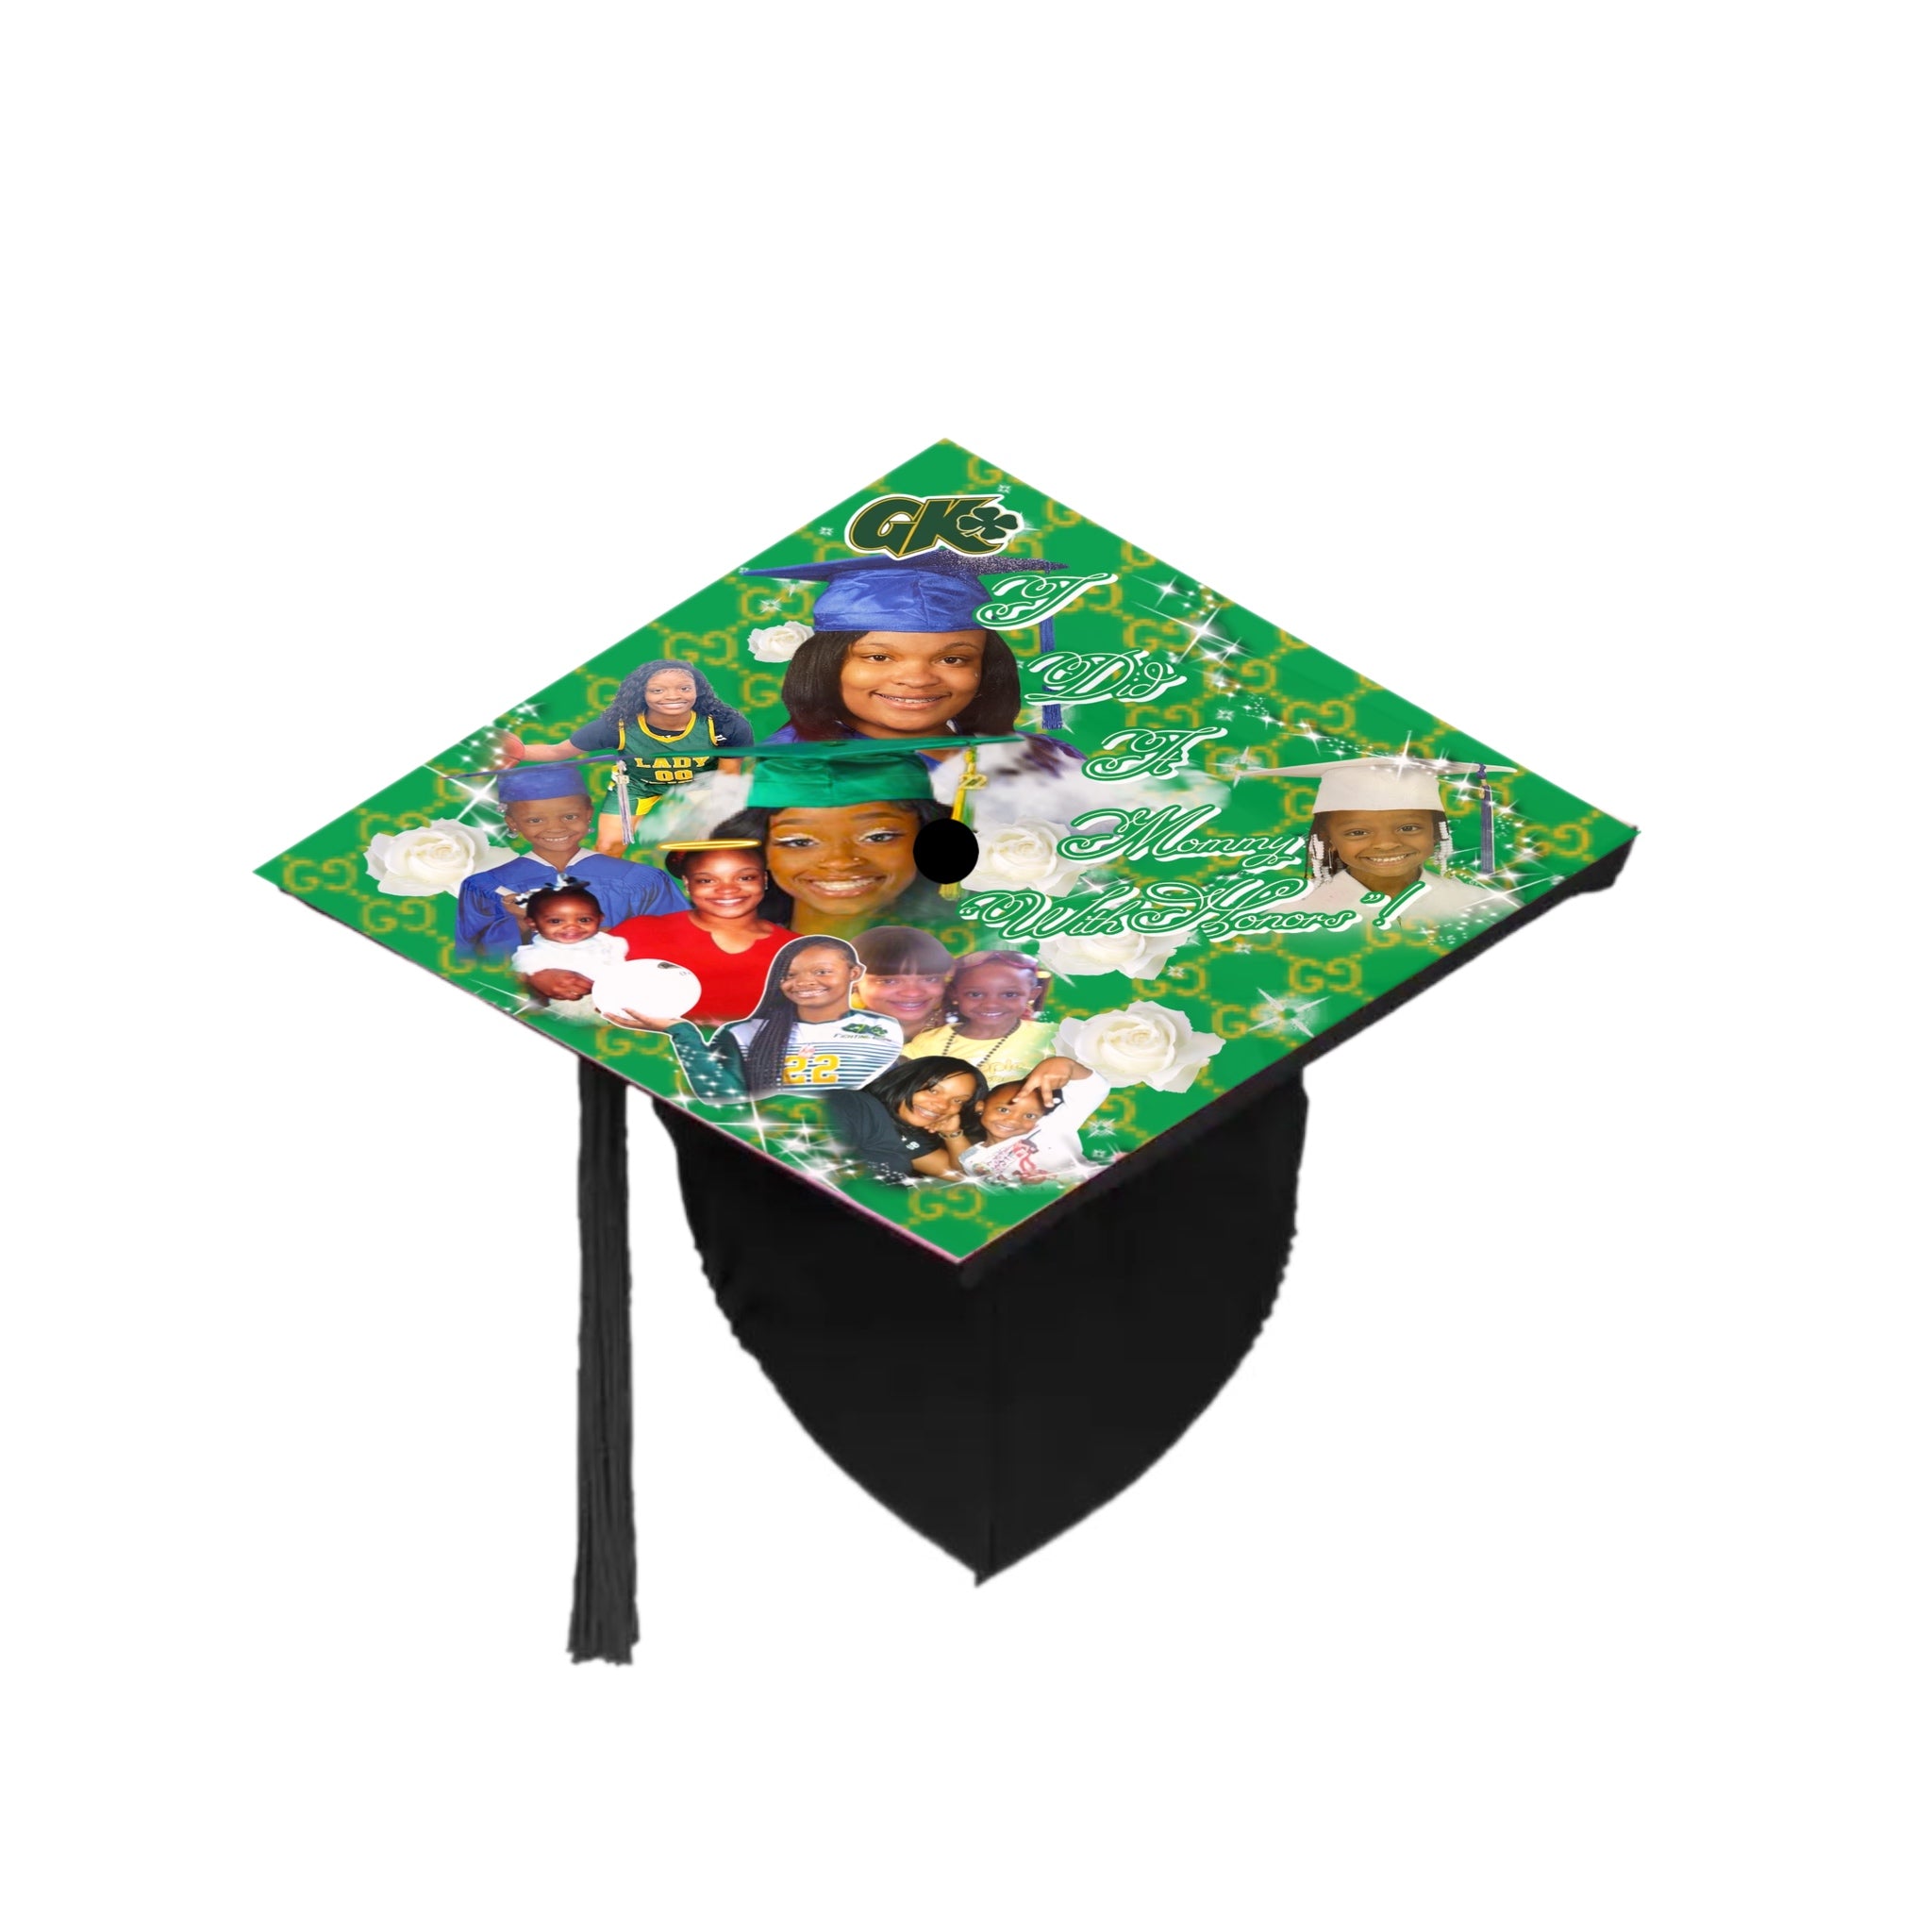 Sublimation graduation cap topper – We Sub'N